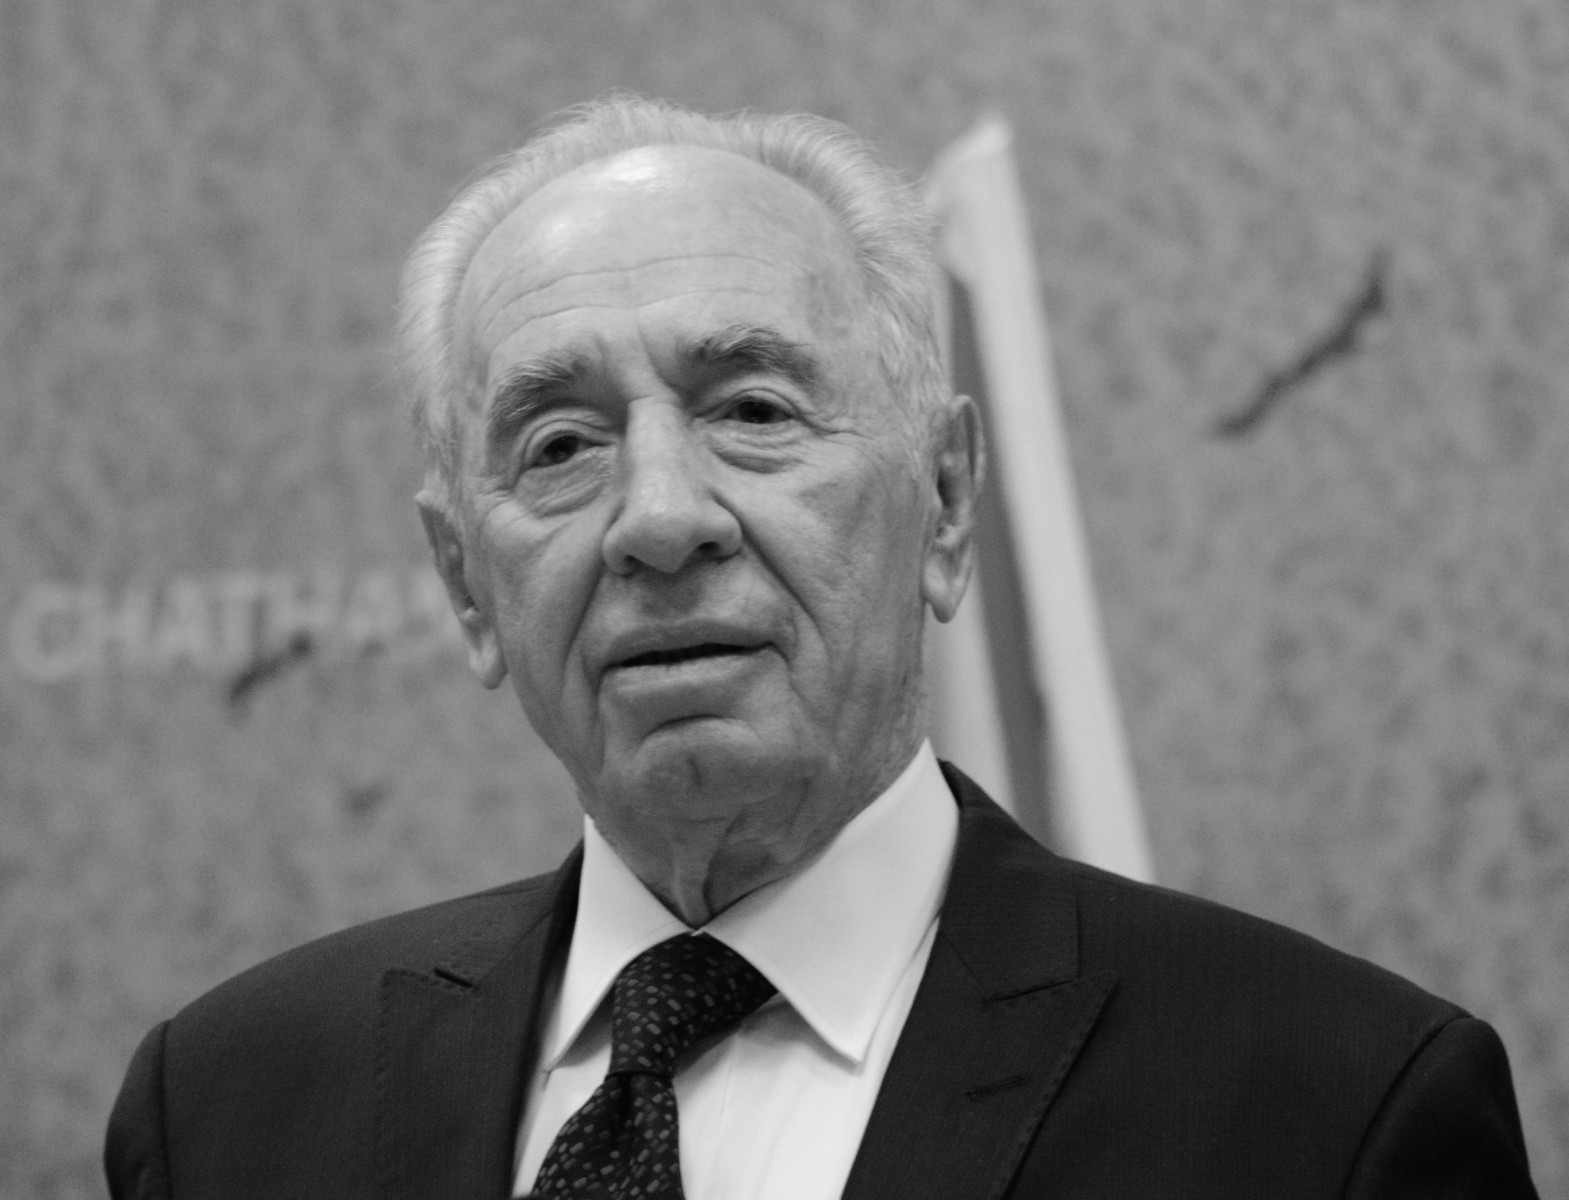 Szimon Peres. Starszy, siwowłosy mężczyzna w garniturze.